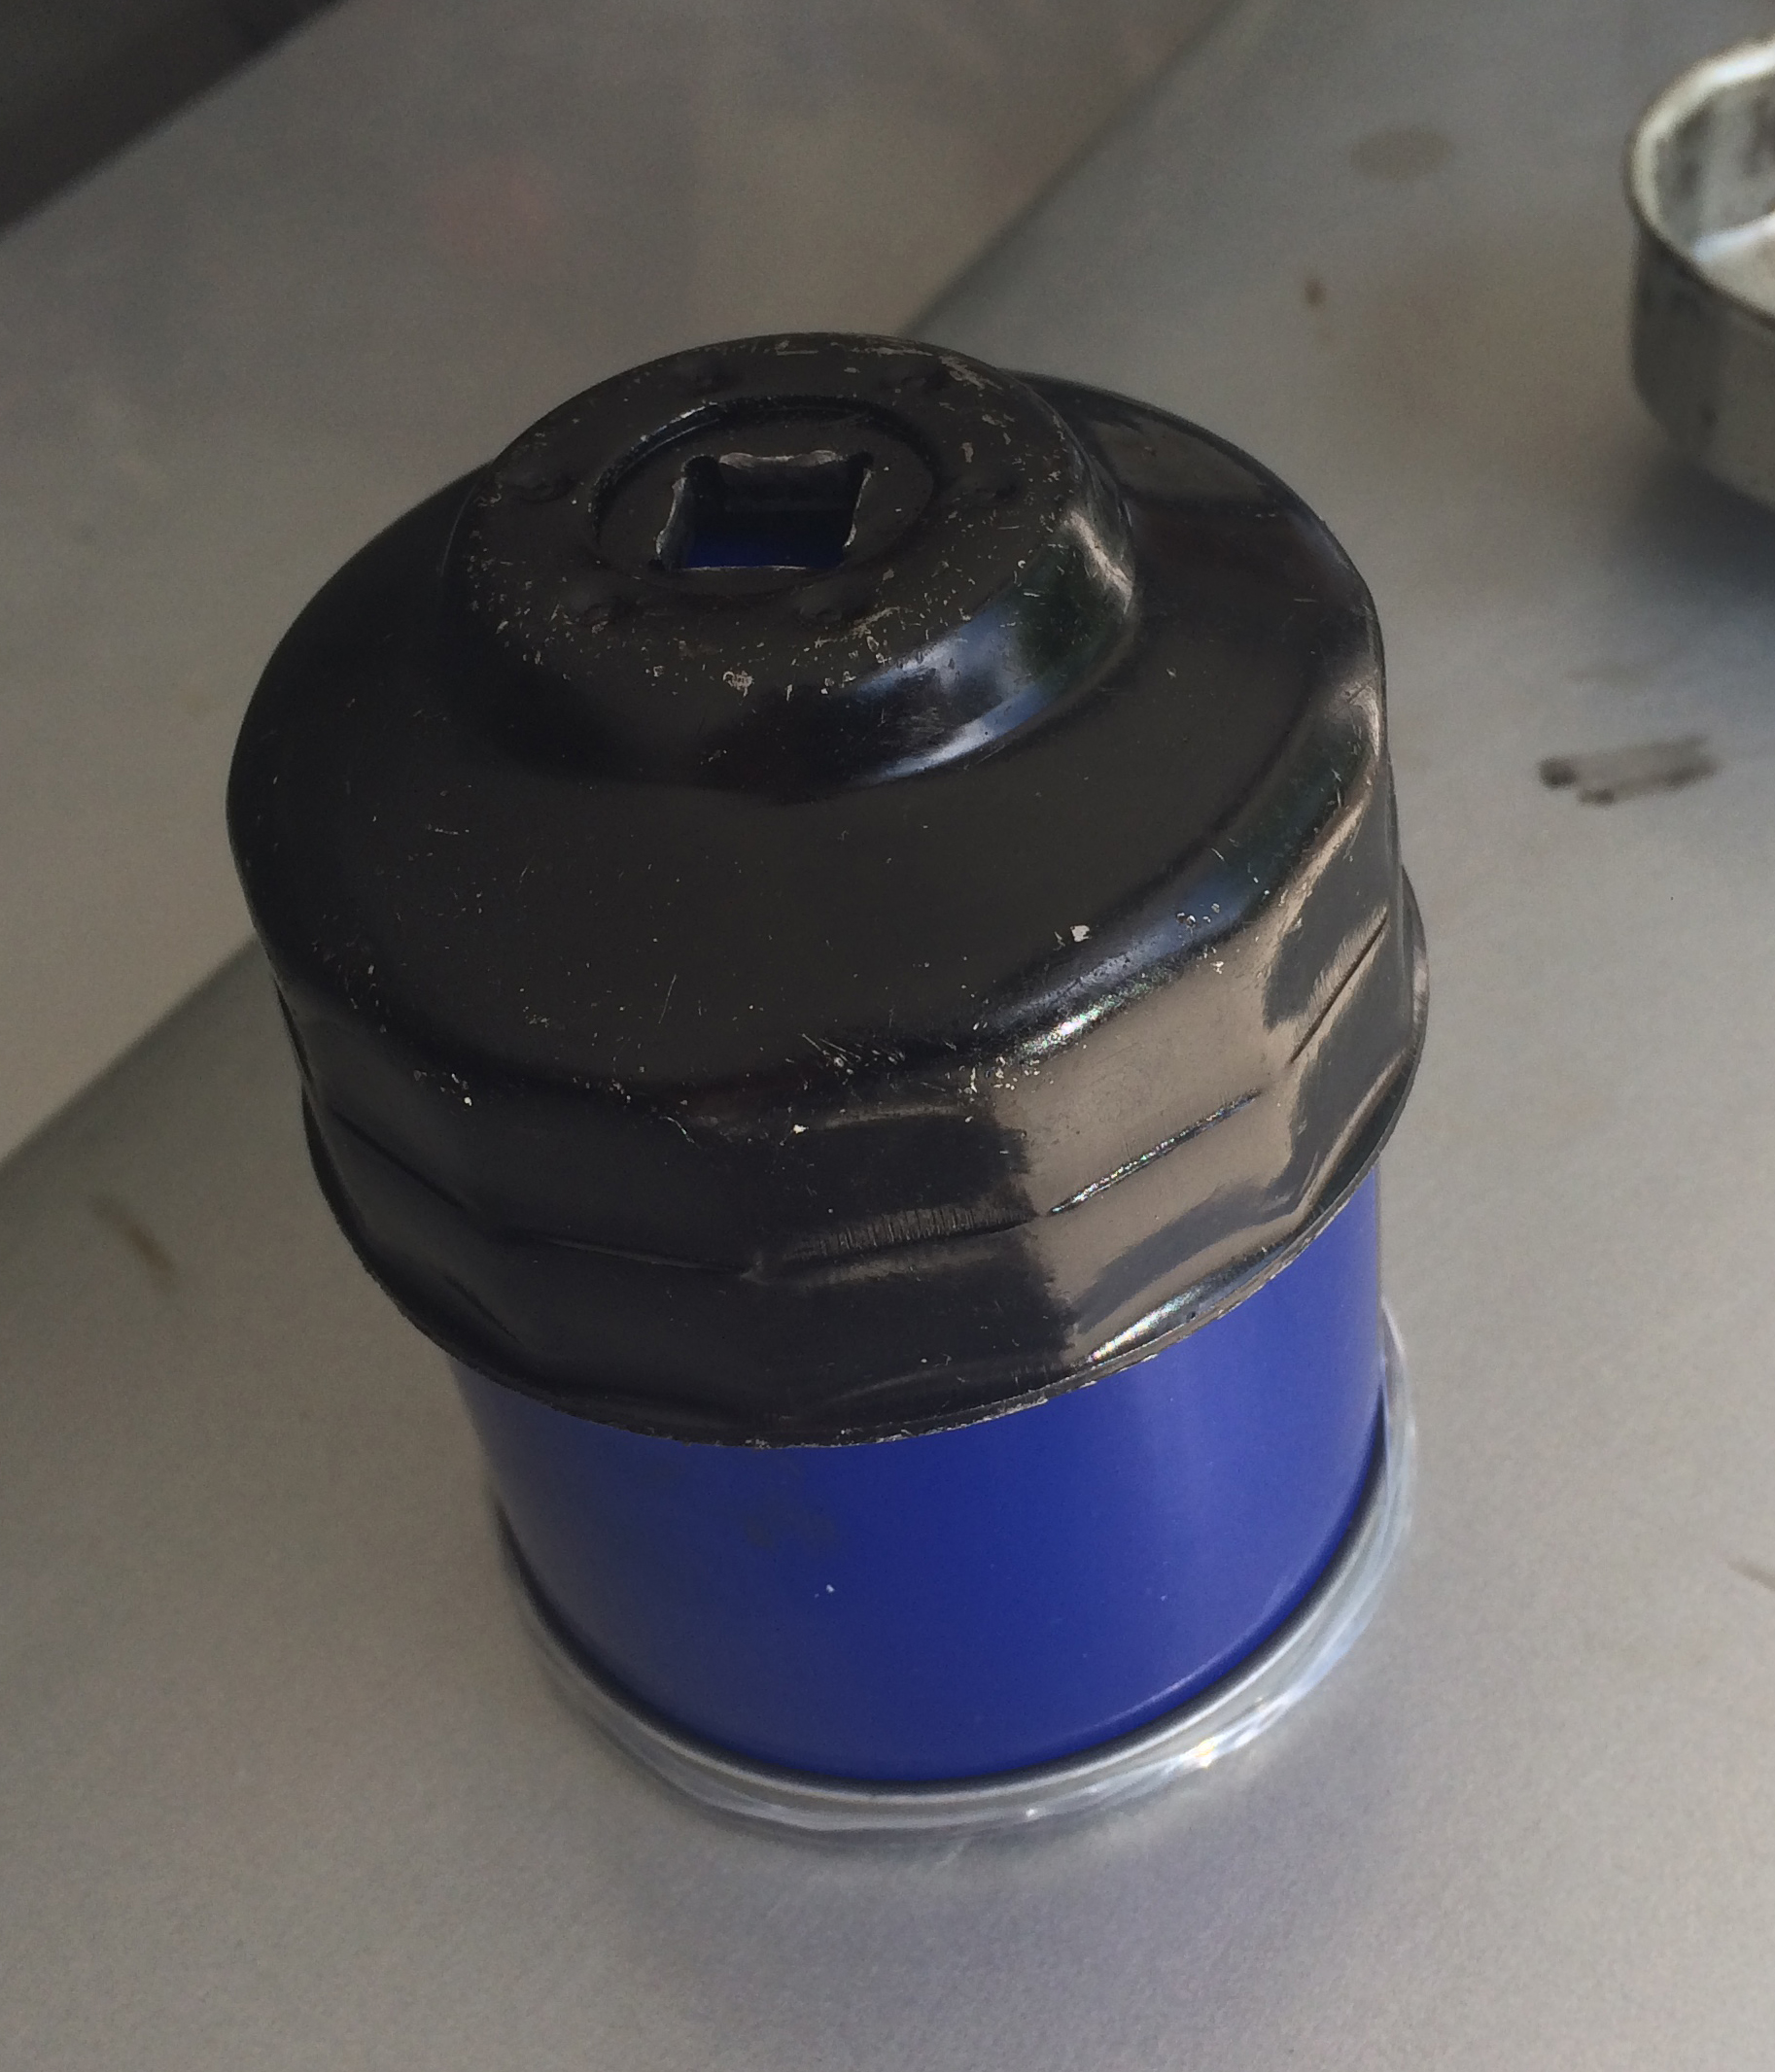 https://www.onallcylinders.com/wp-content/uploads/2021/06/10/Oil-Filter-Socket-on-Oil-Filter-Blue.jpg